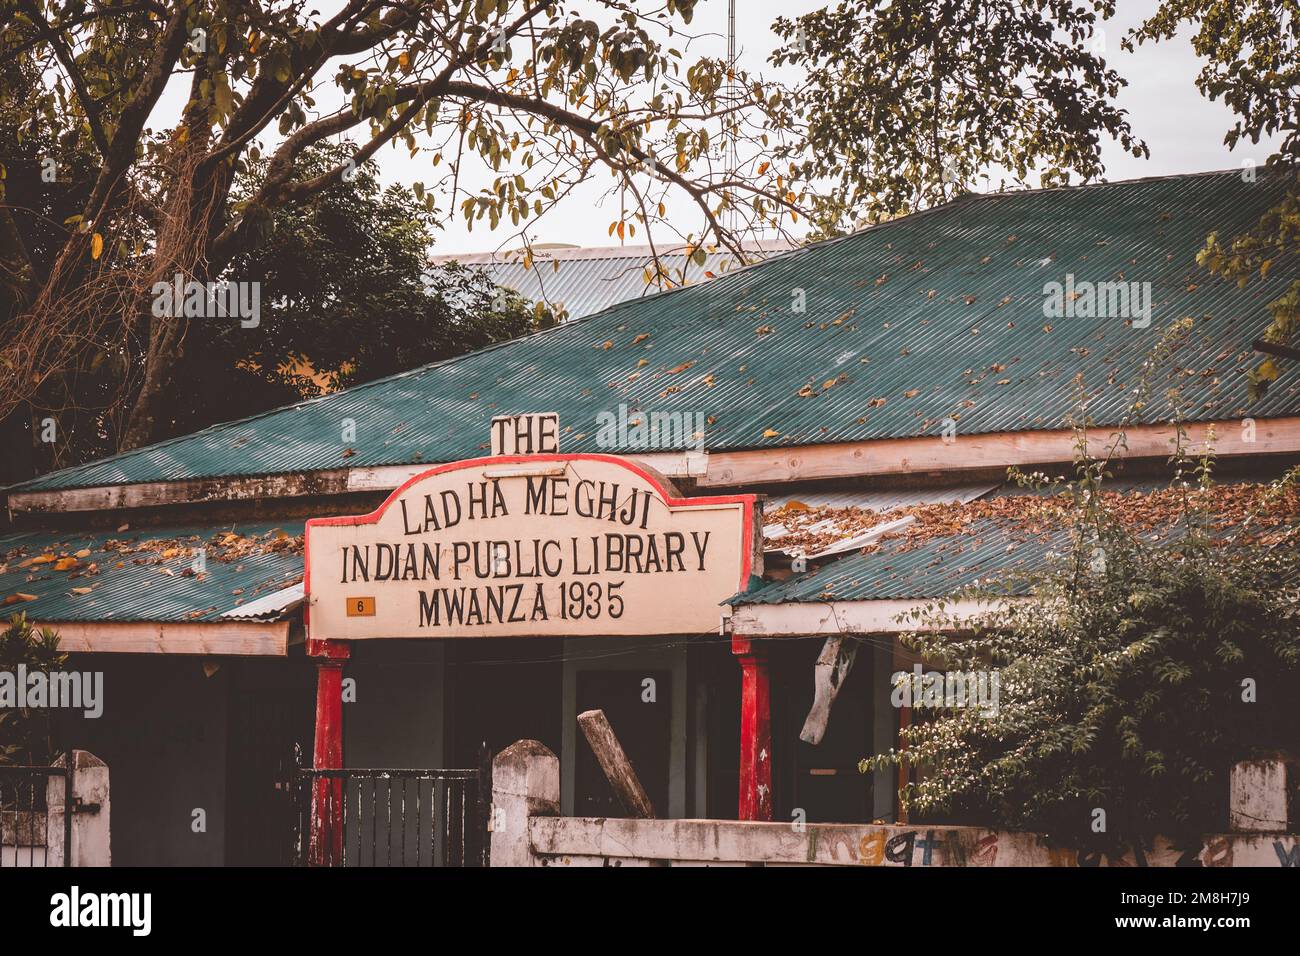 25.03.2022 - Mwanza, Tansania - Alte Indische Öffentliche Bibliothek 1935. Gebäude in Afrika. Das Ist Ladha Meghji Stockfoto